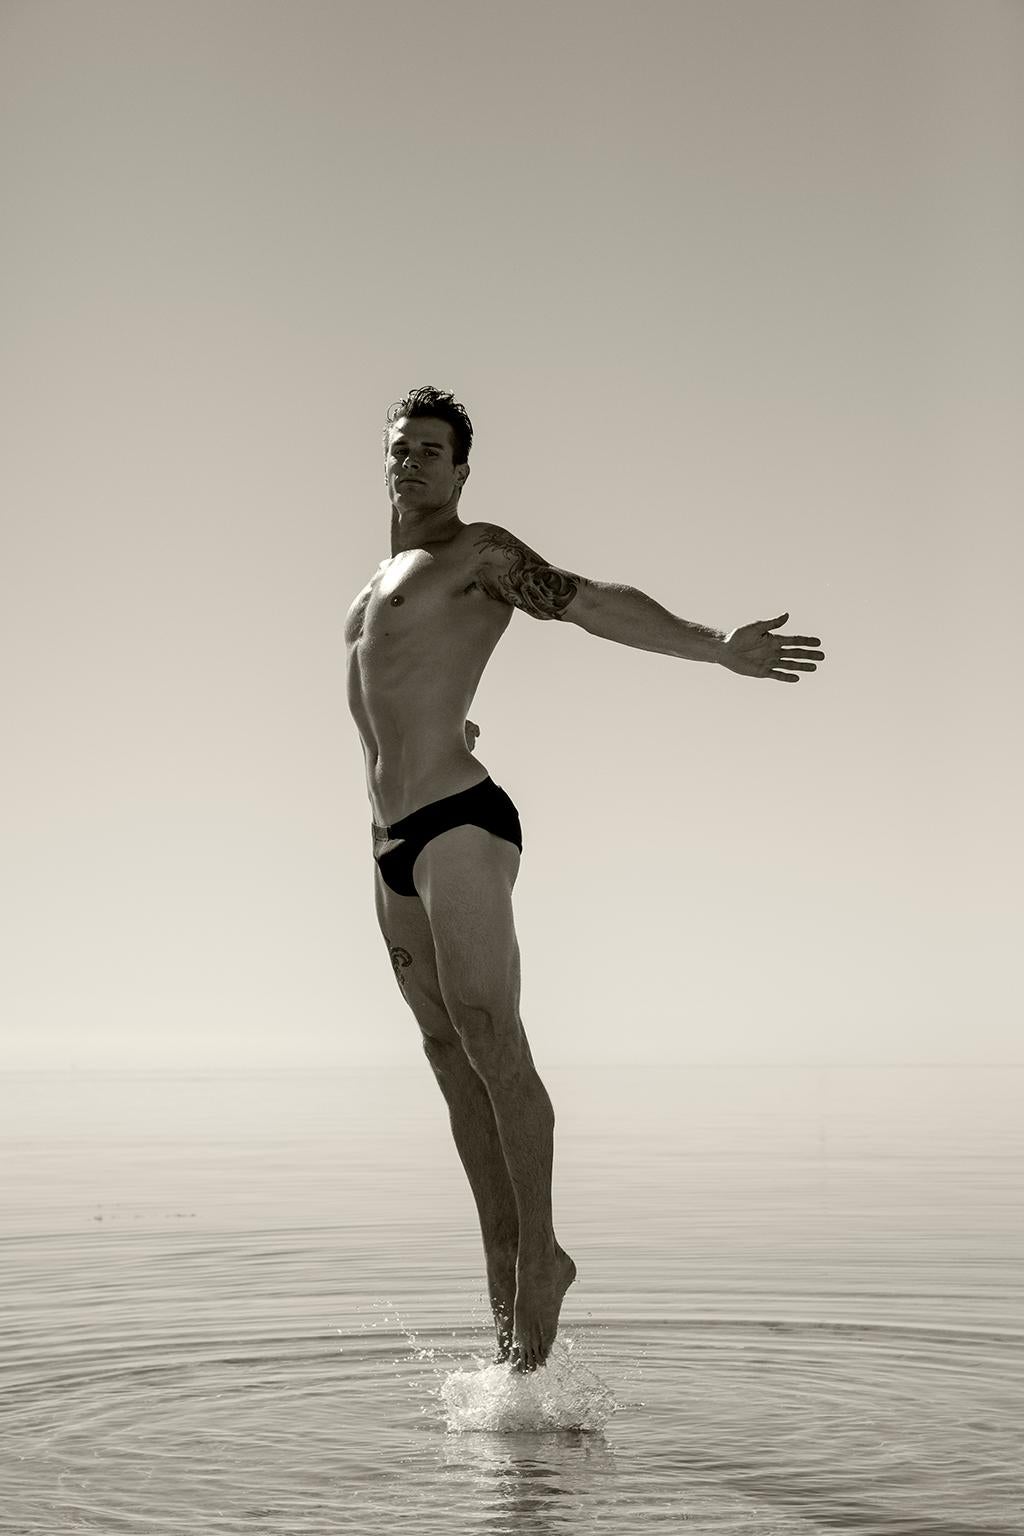 Ricky Cohete Nude Photograph – Ein Mann springt aus dem Wasser, 1. Figurative Sepia-Fotografie in limitierter Auflage